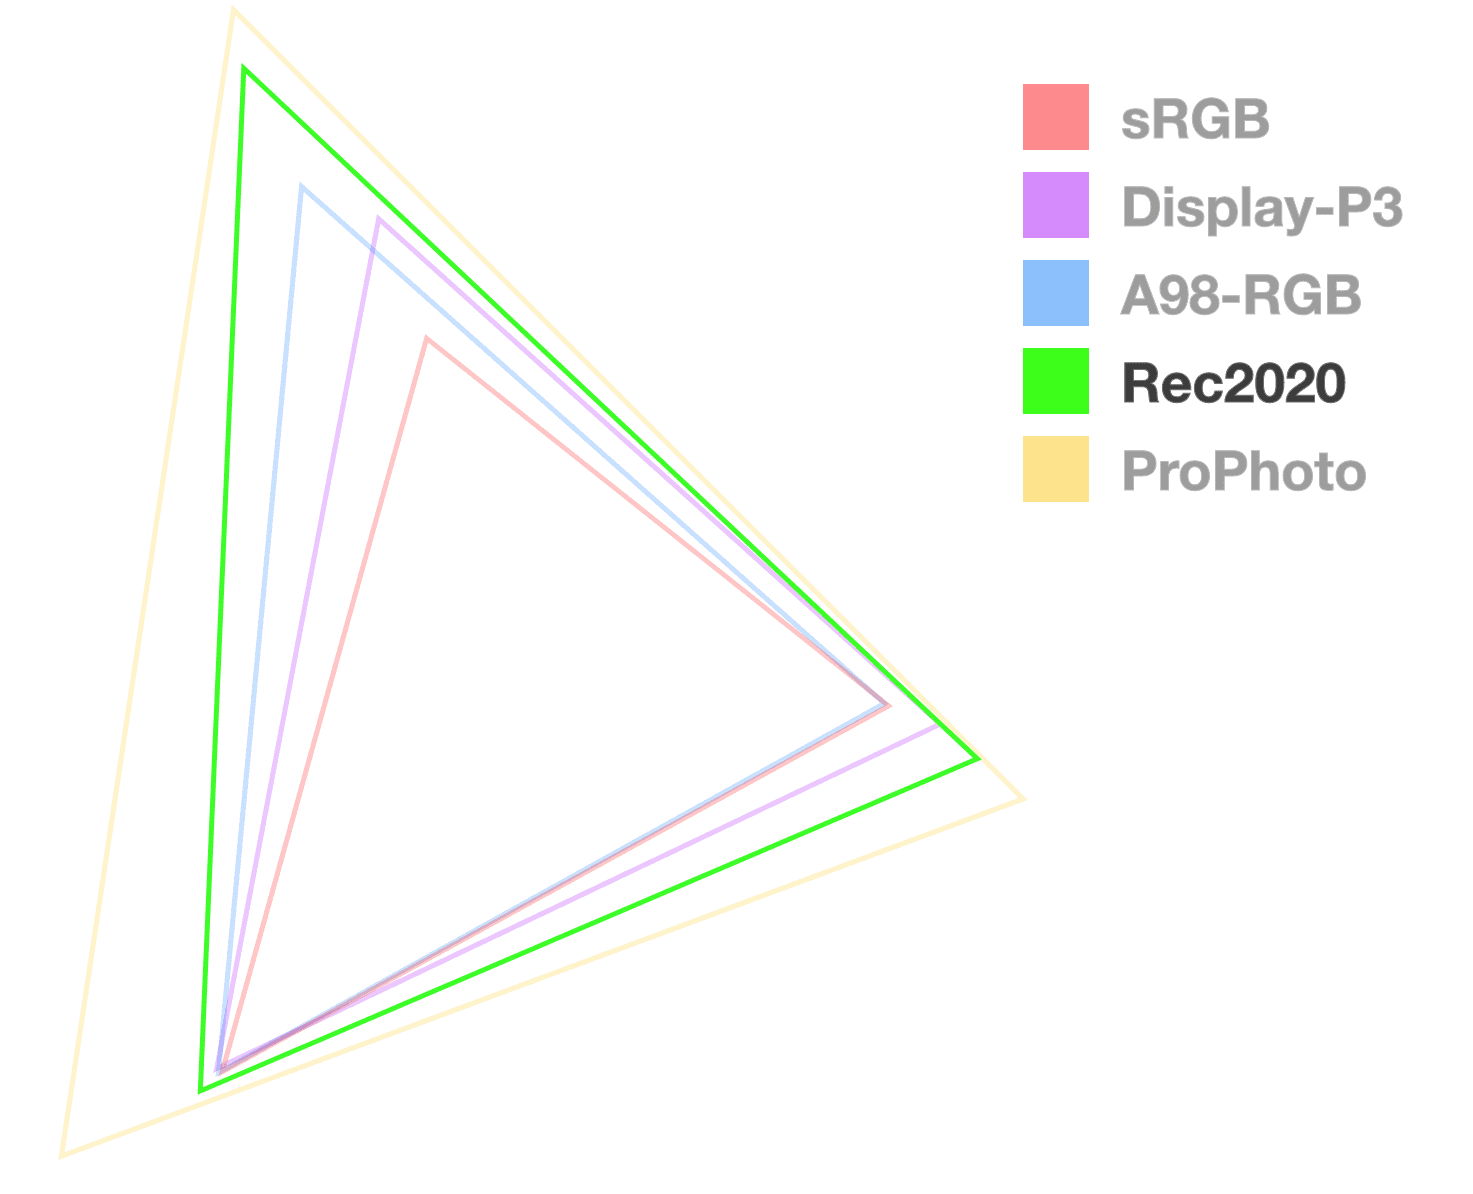 De Rec2020-driehoek is de enige die volledig ondoorzichtig is, om de grootte van het gamma te helpen visualiseren. Het lijkt de 2e van de grootste.